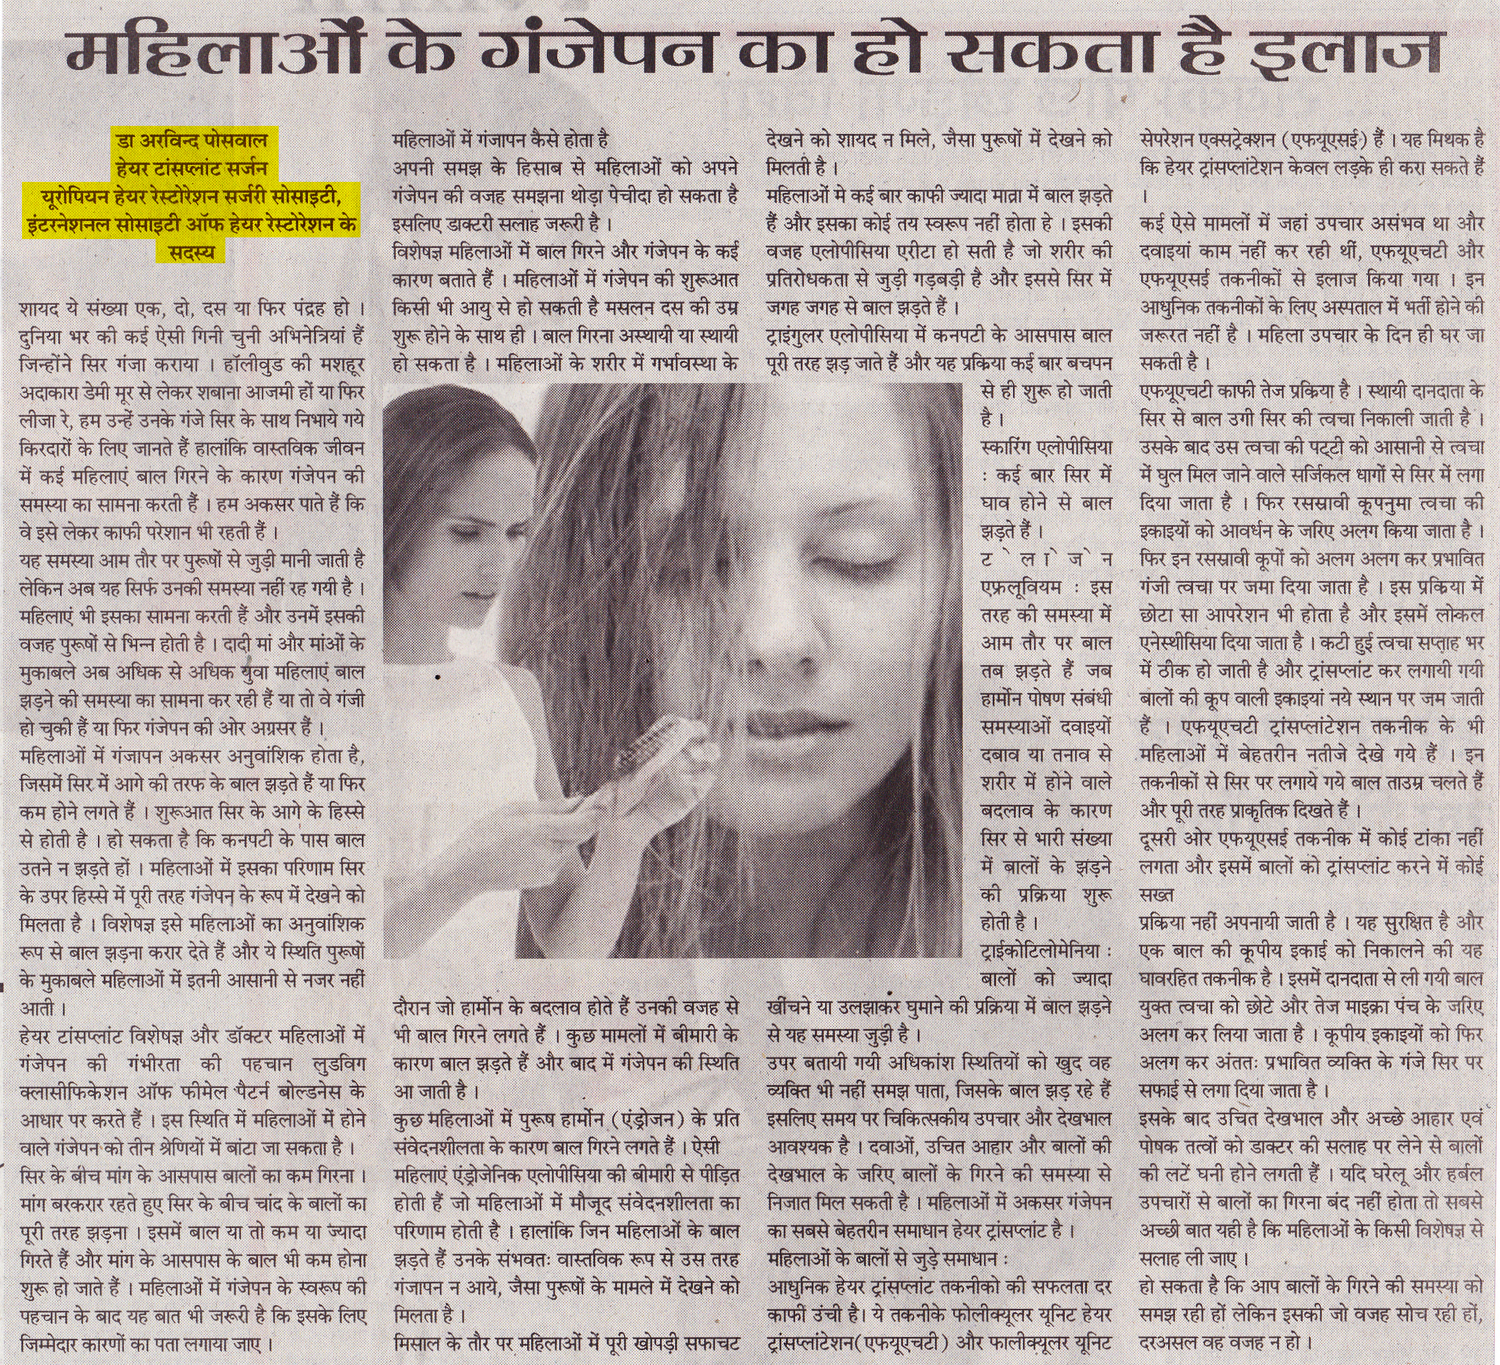 Virat Vaibhav (Newspaper), 25 Aug 2011 (New Delhi)